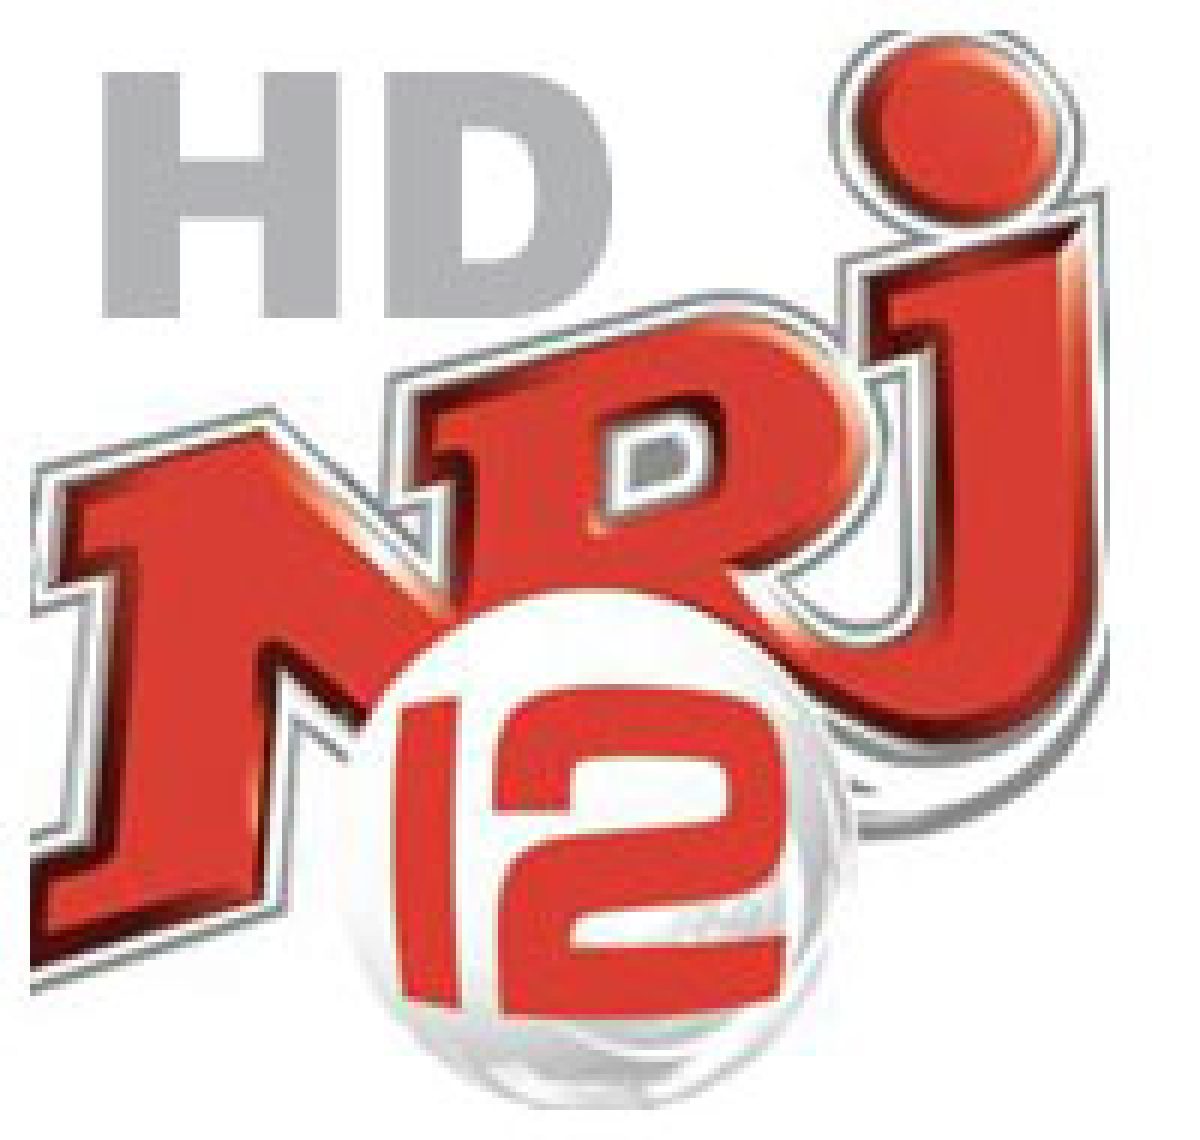 NRJ12 en haute définition sur Freebox TV